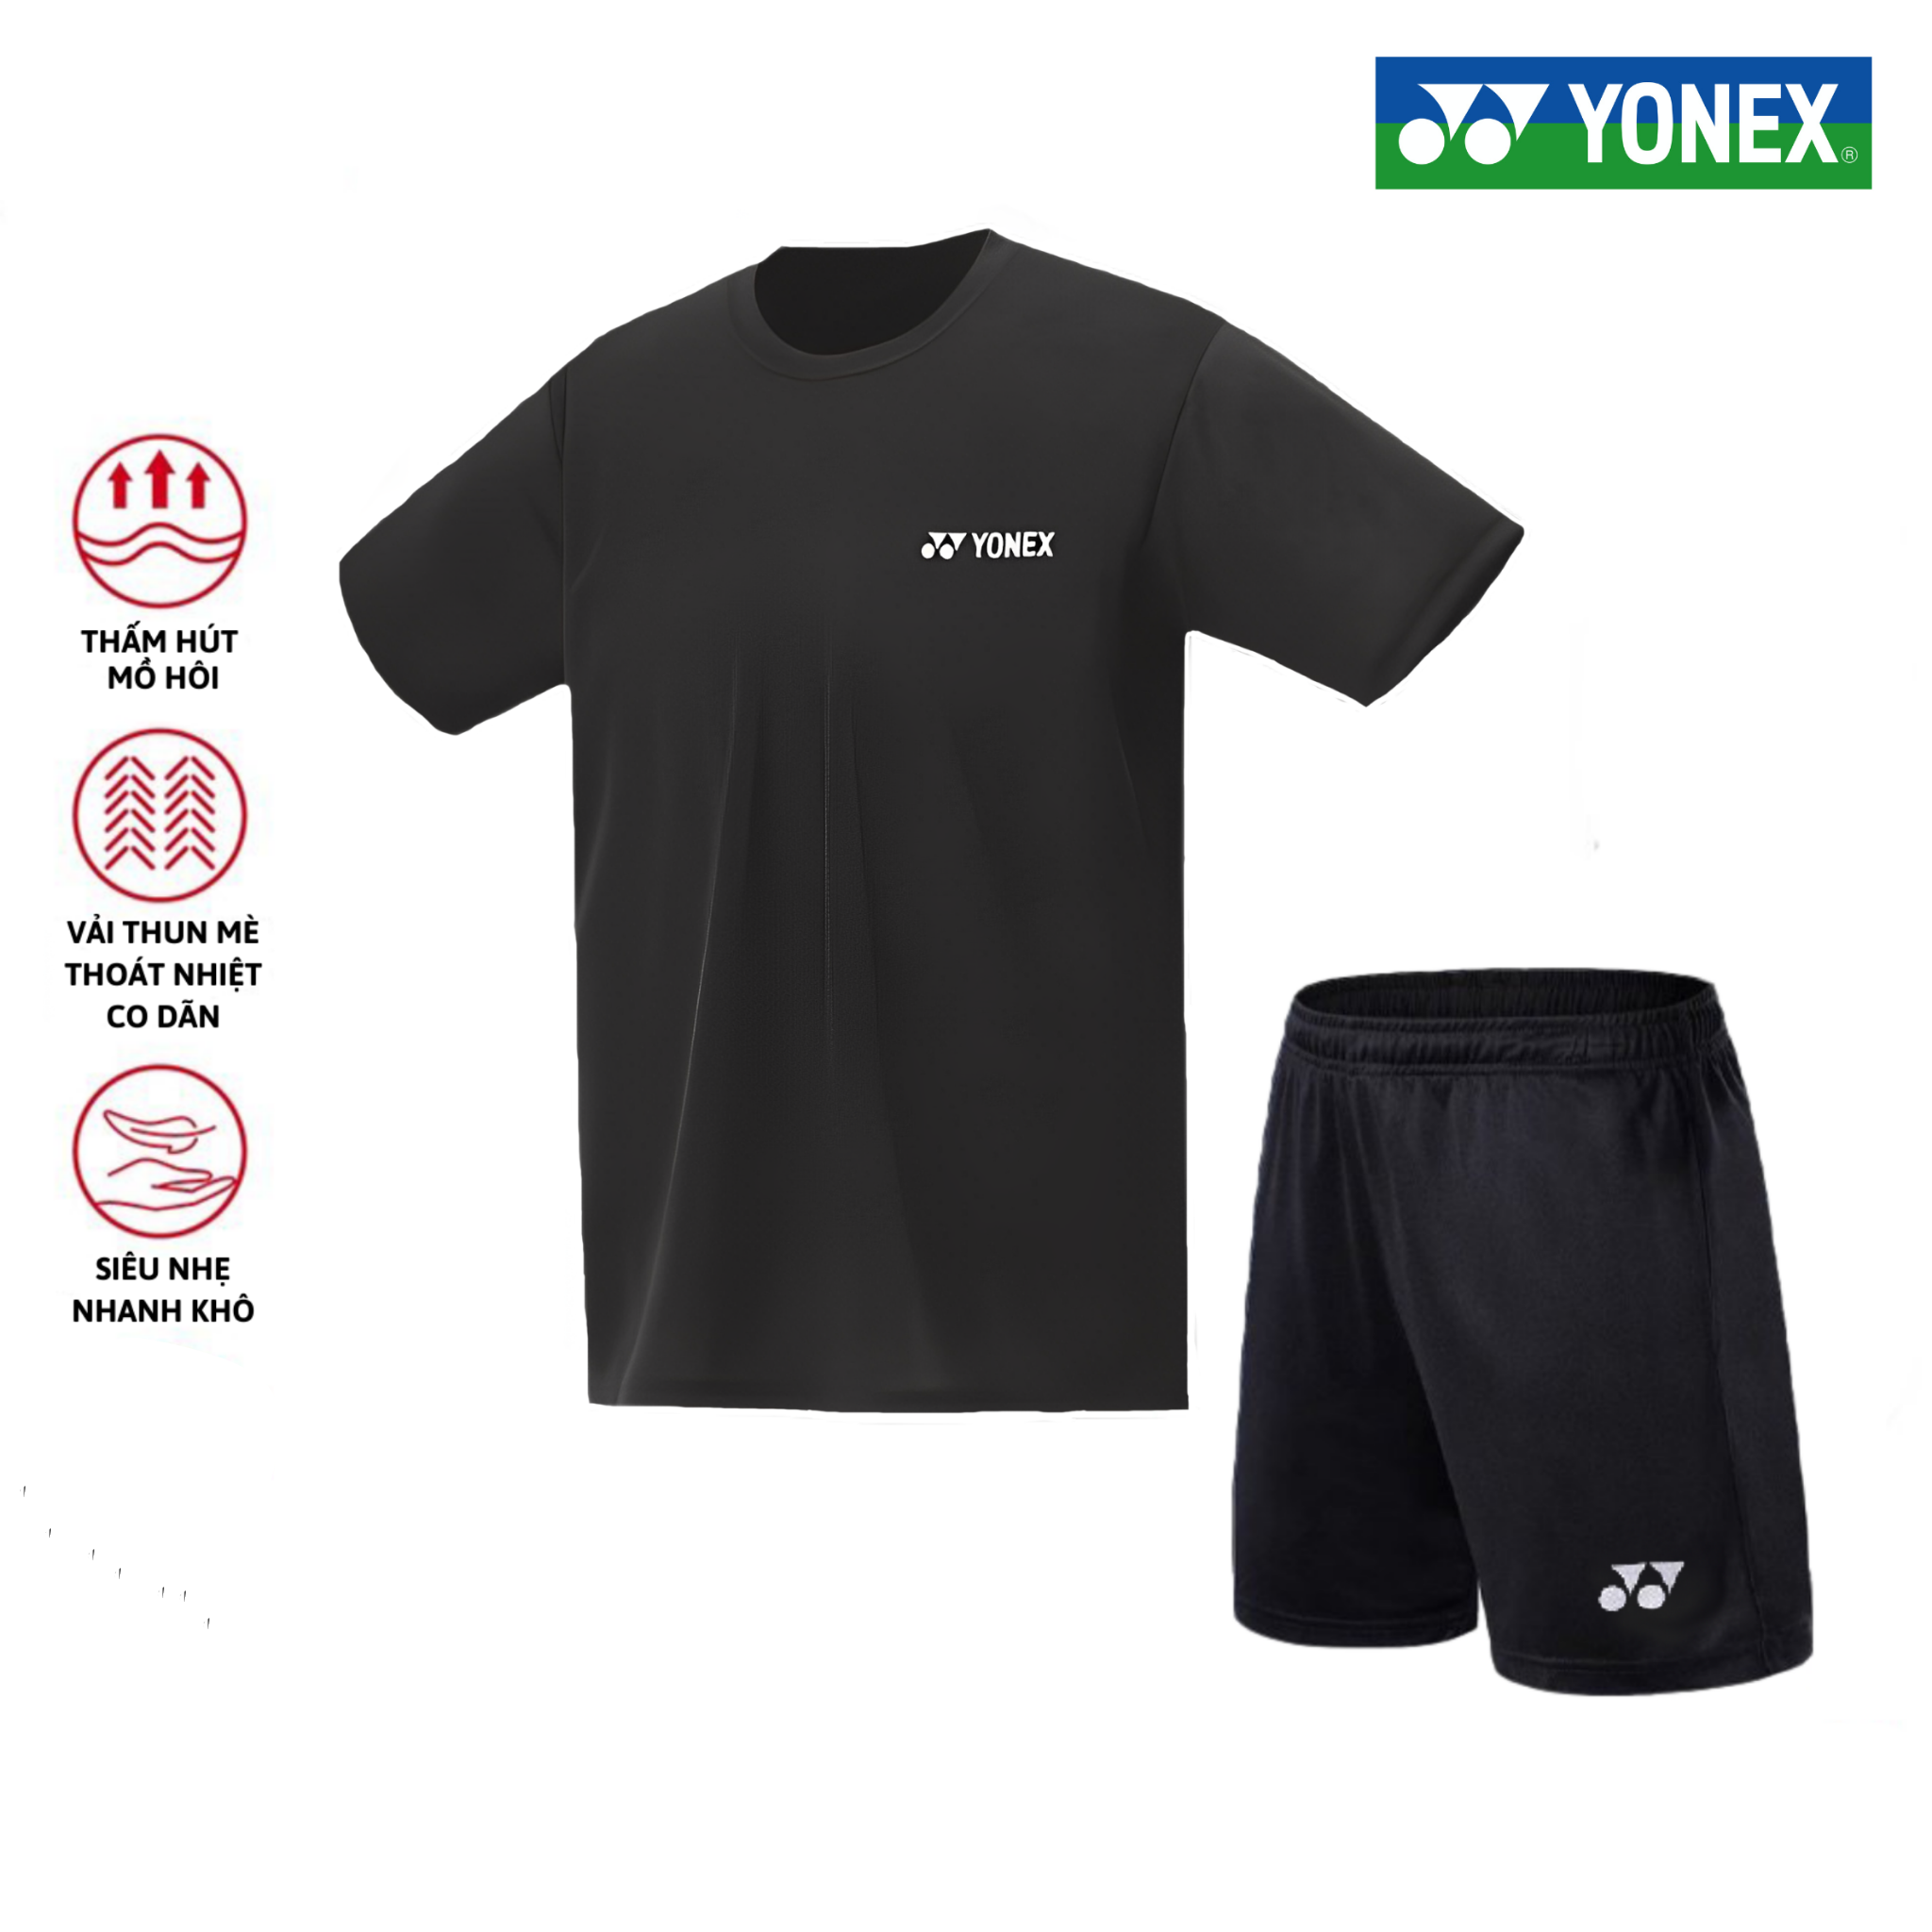 Áo cầu lông, quần cầu lông Yonex chuyên nghiệp mới nhất sử dụng tập luyện và thi đấu cầu lông T31